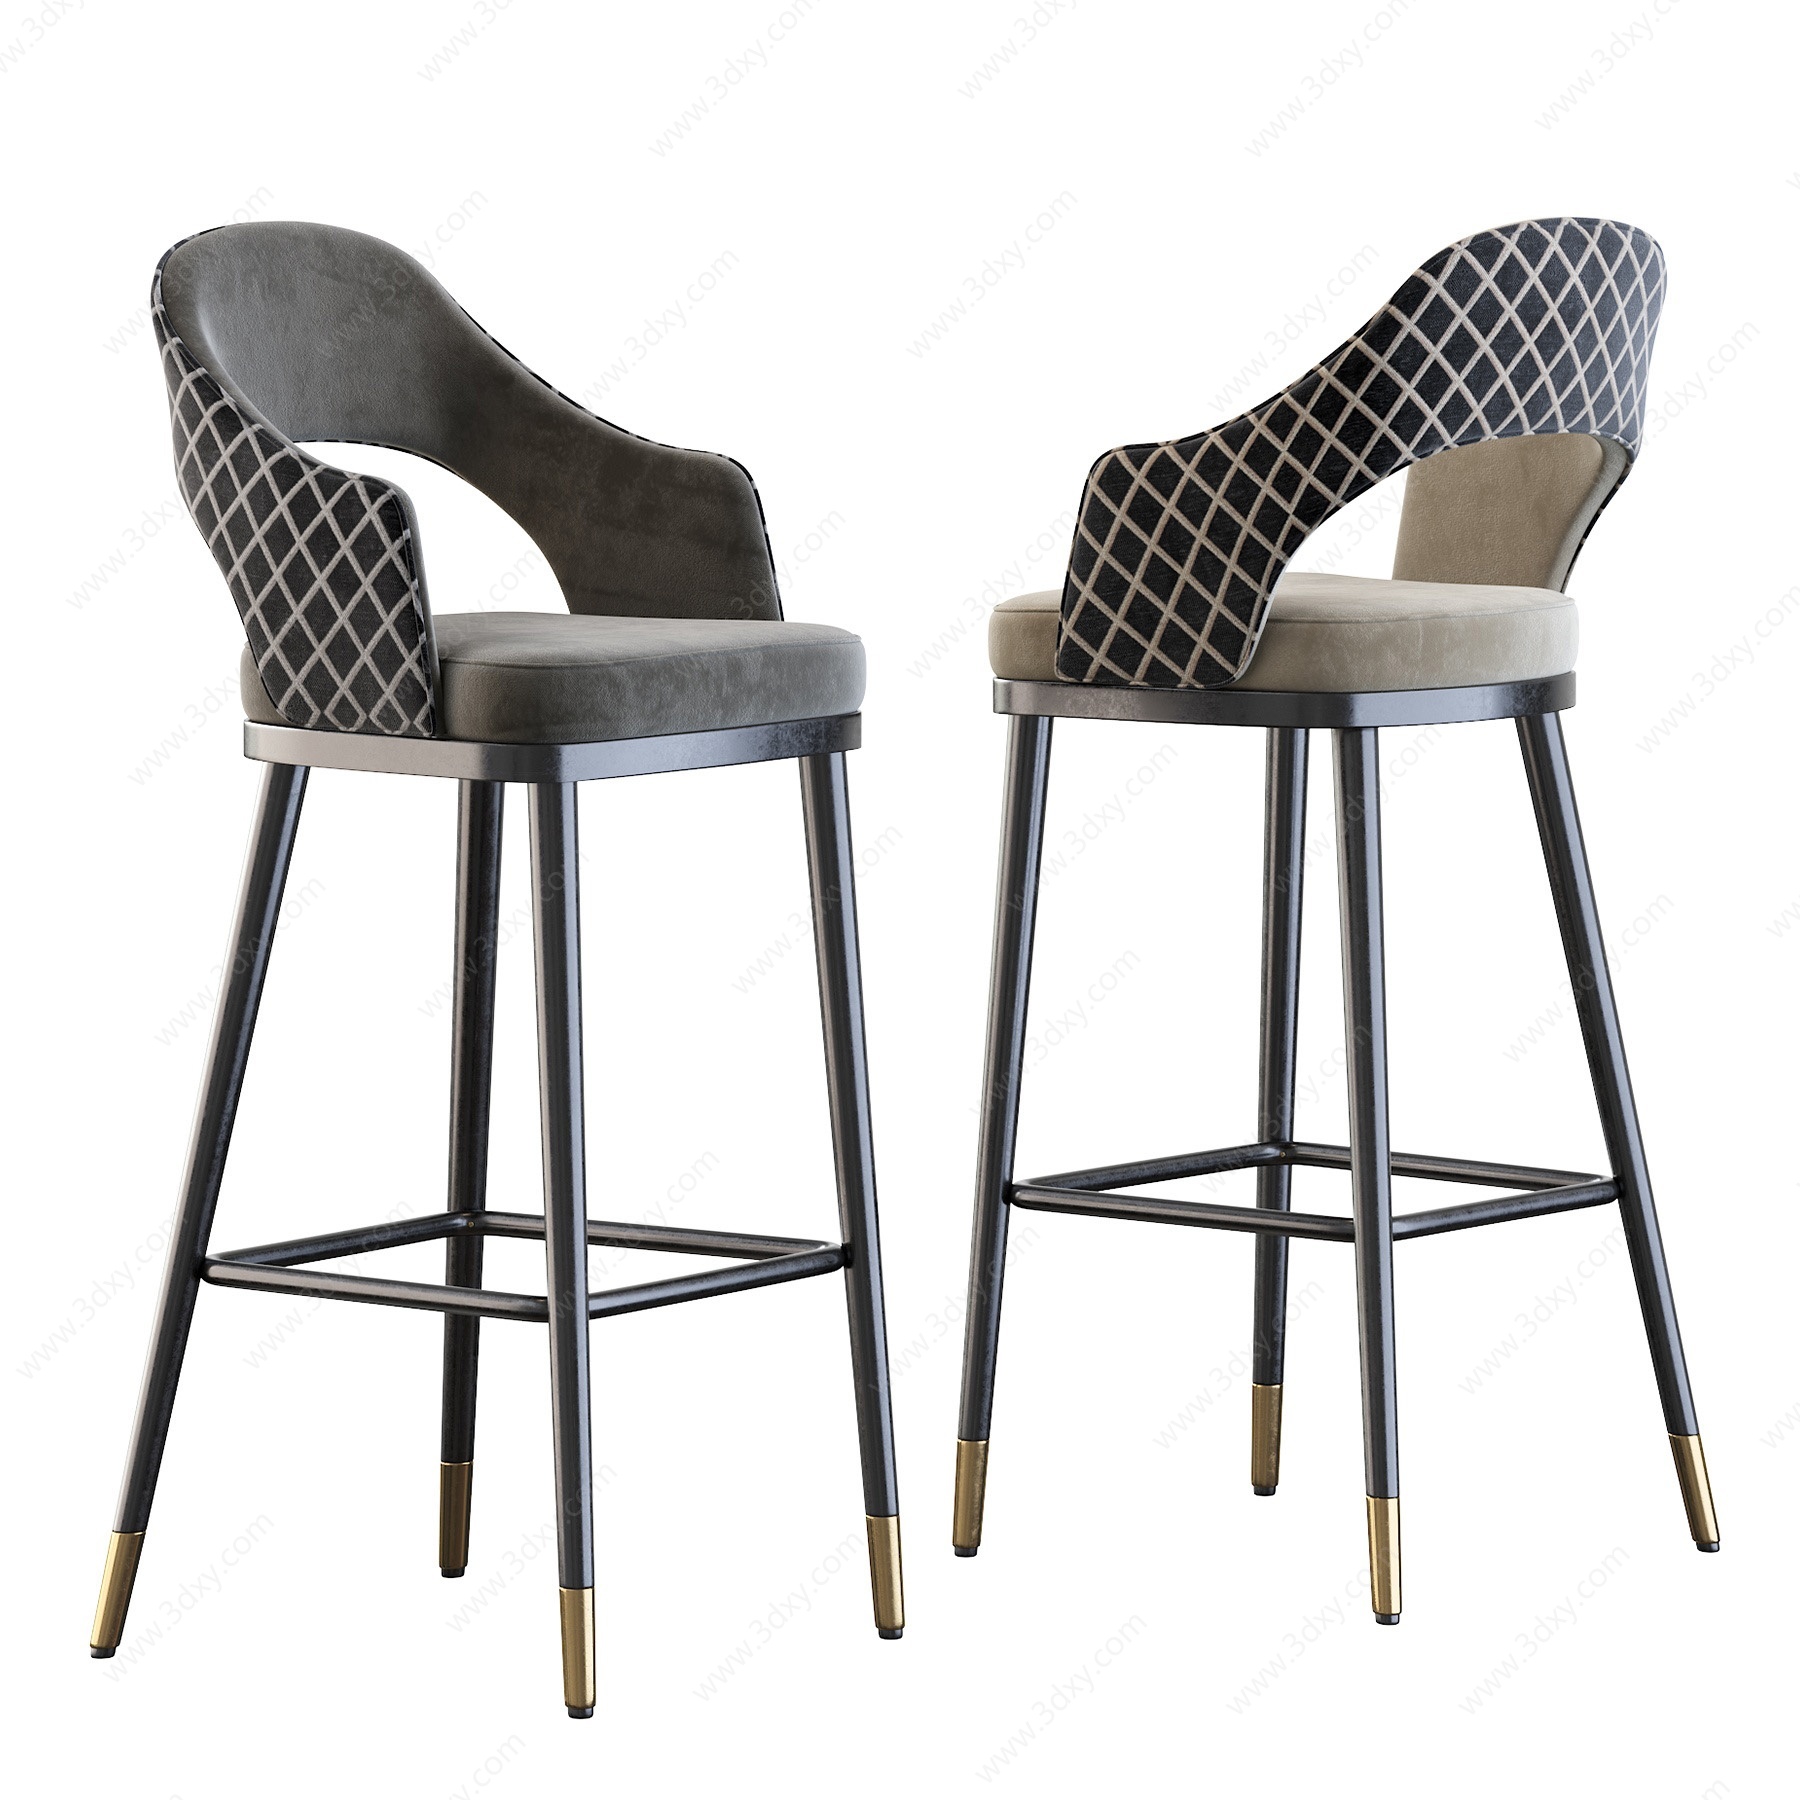 高品质实木软质吧椅3D模型